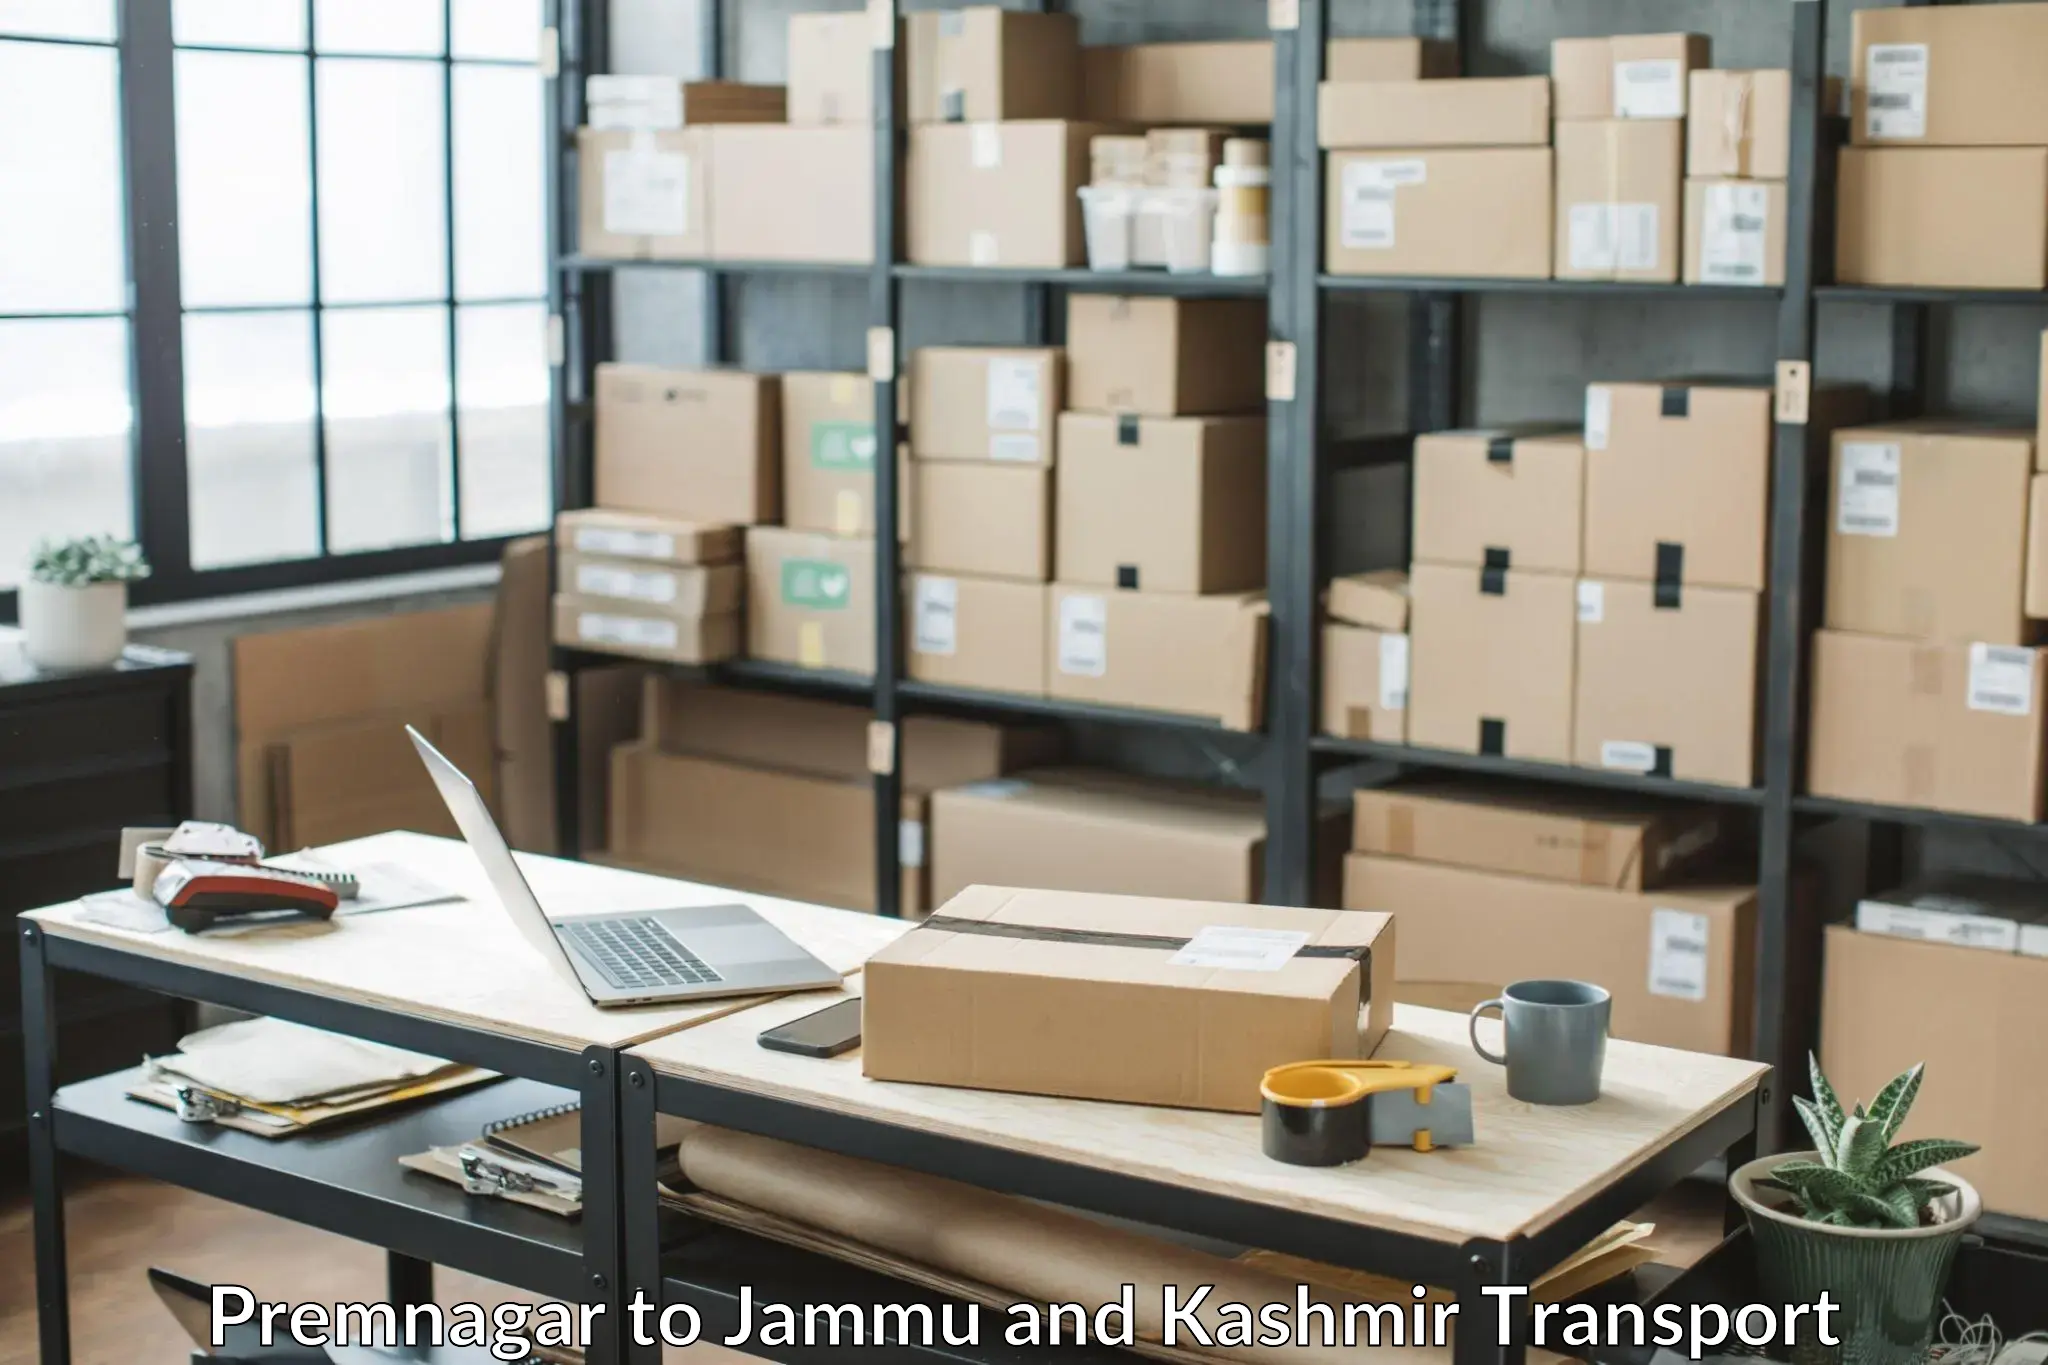 Daily parcel service transport Premnagar to Srinagar Kashmir